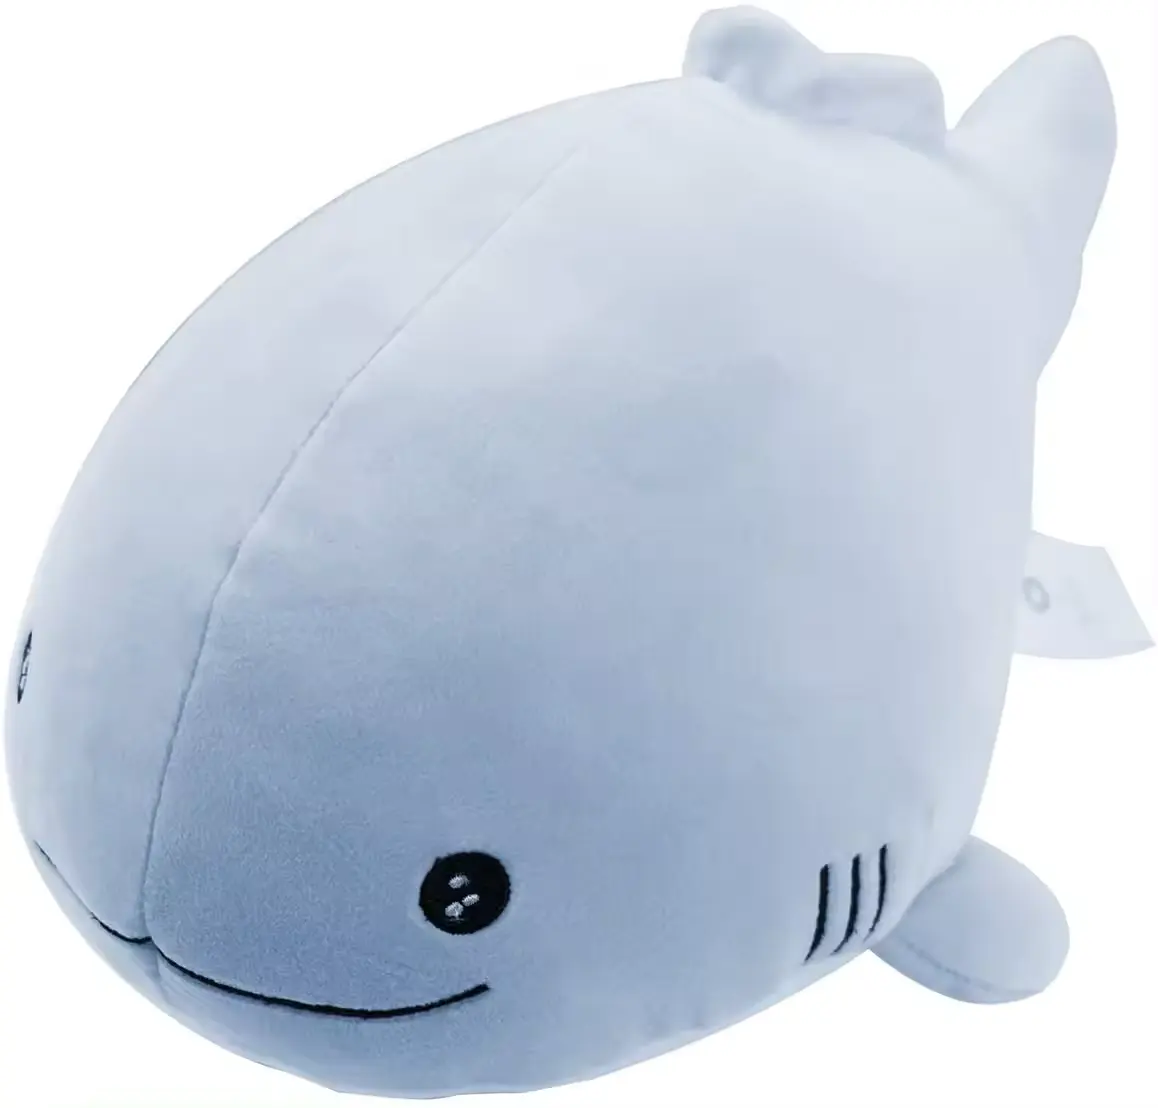 OEM/ODM supporto campione gratuito carino squalo peluche bambola giocattolo per bambini creatura marina peluche giocattolo personalizzato